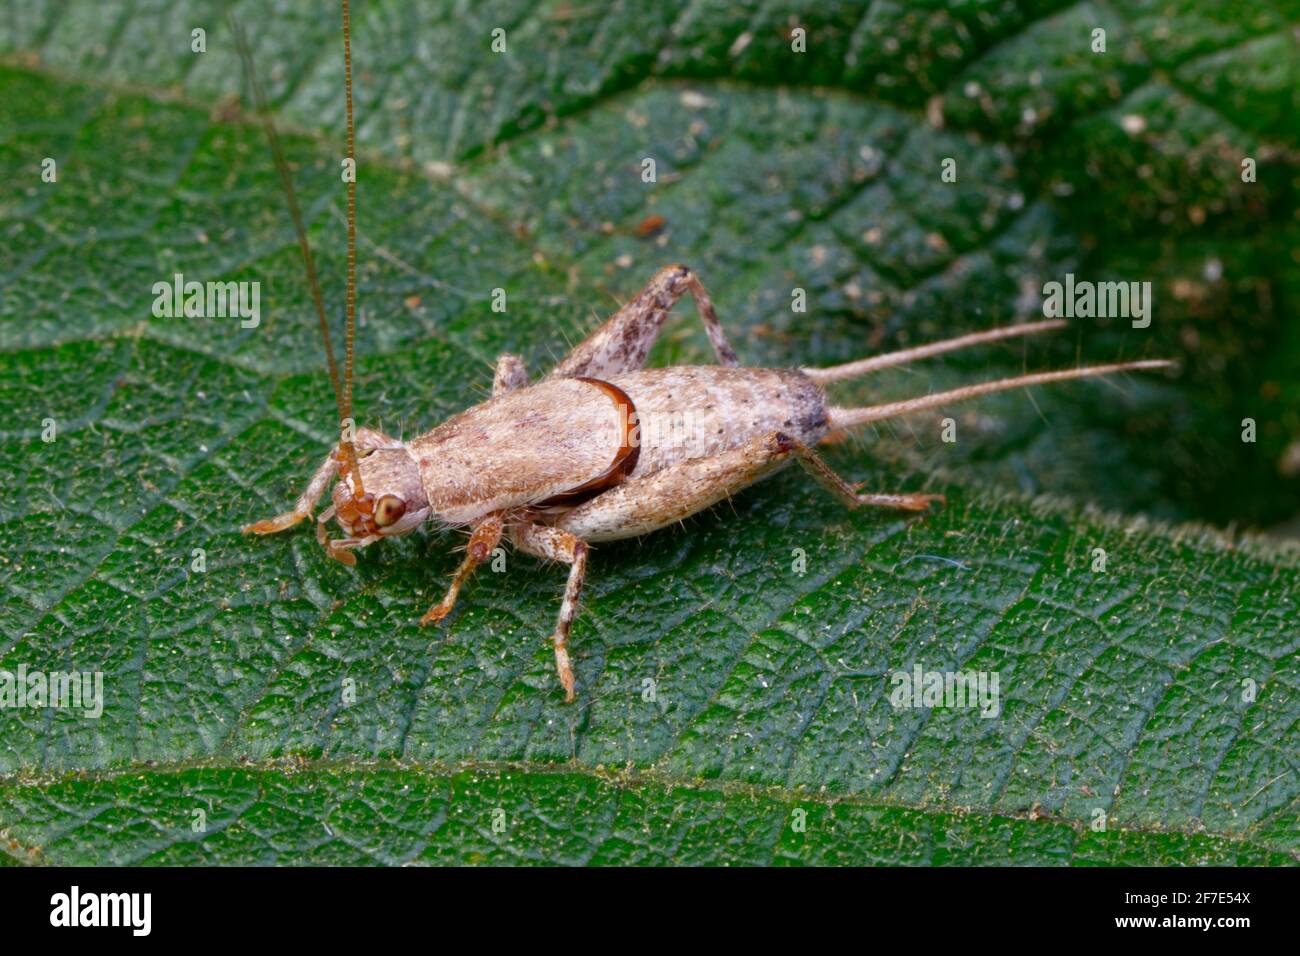 Eine Cricket-Spezies von Bush, die im Norden Floridas auf einem Blatt kriecht. Stockfoto